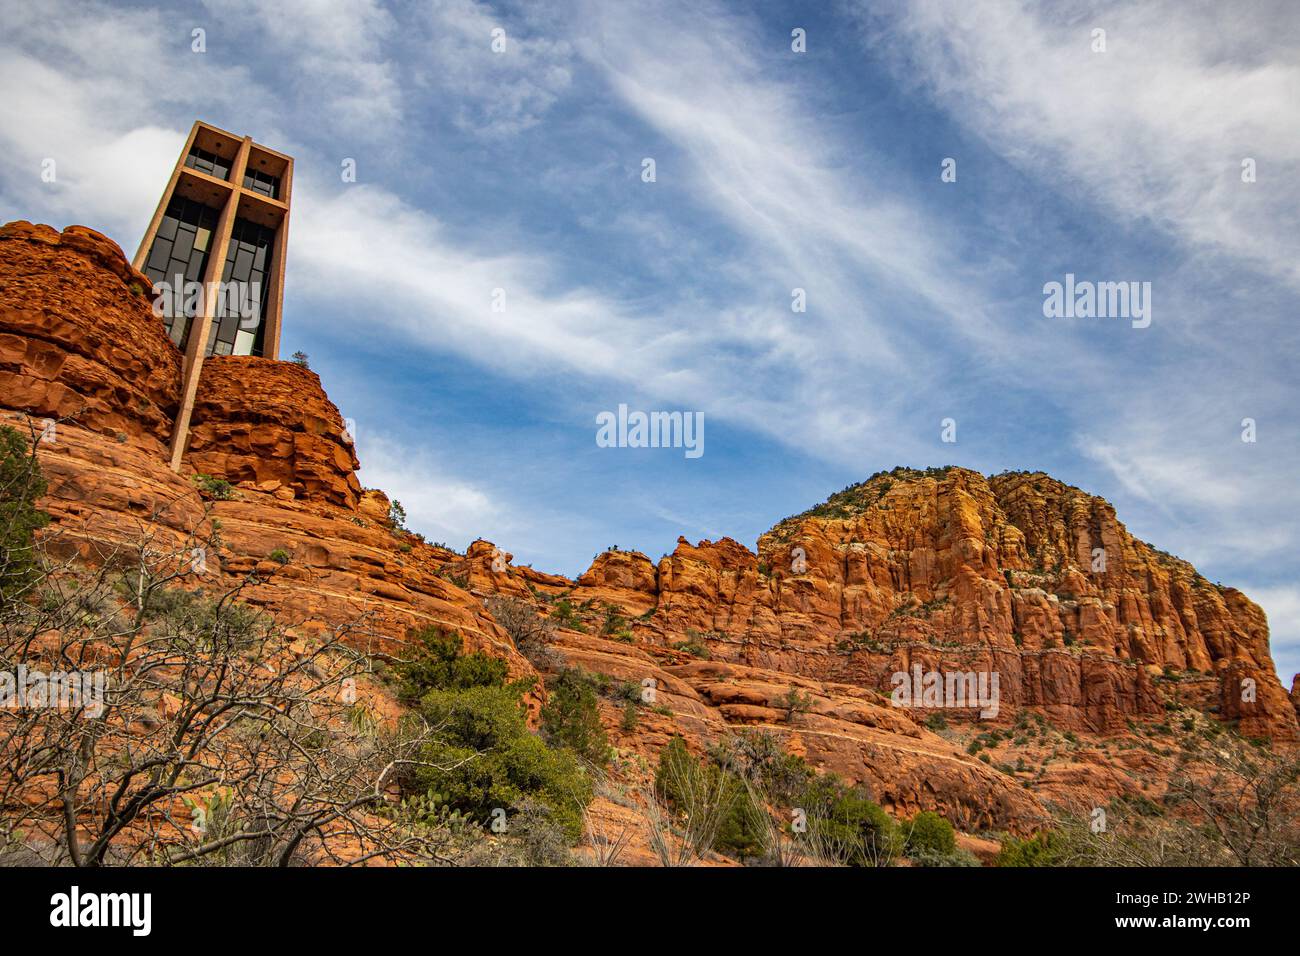 La chapelle de la Sainte-Croix est une chapelle catholique romaine construite de 1954 à 1956 dans les buttes de roche rouge de Sedona, Arizona, dans le Coconino Natio Banque D'Images